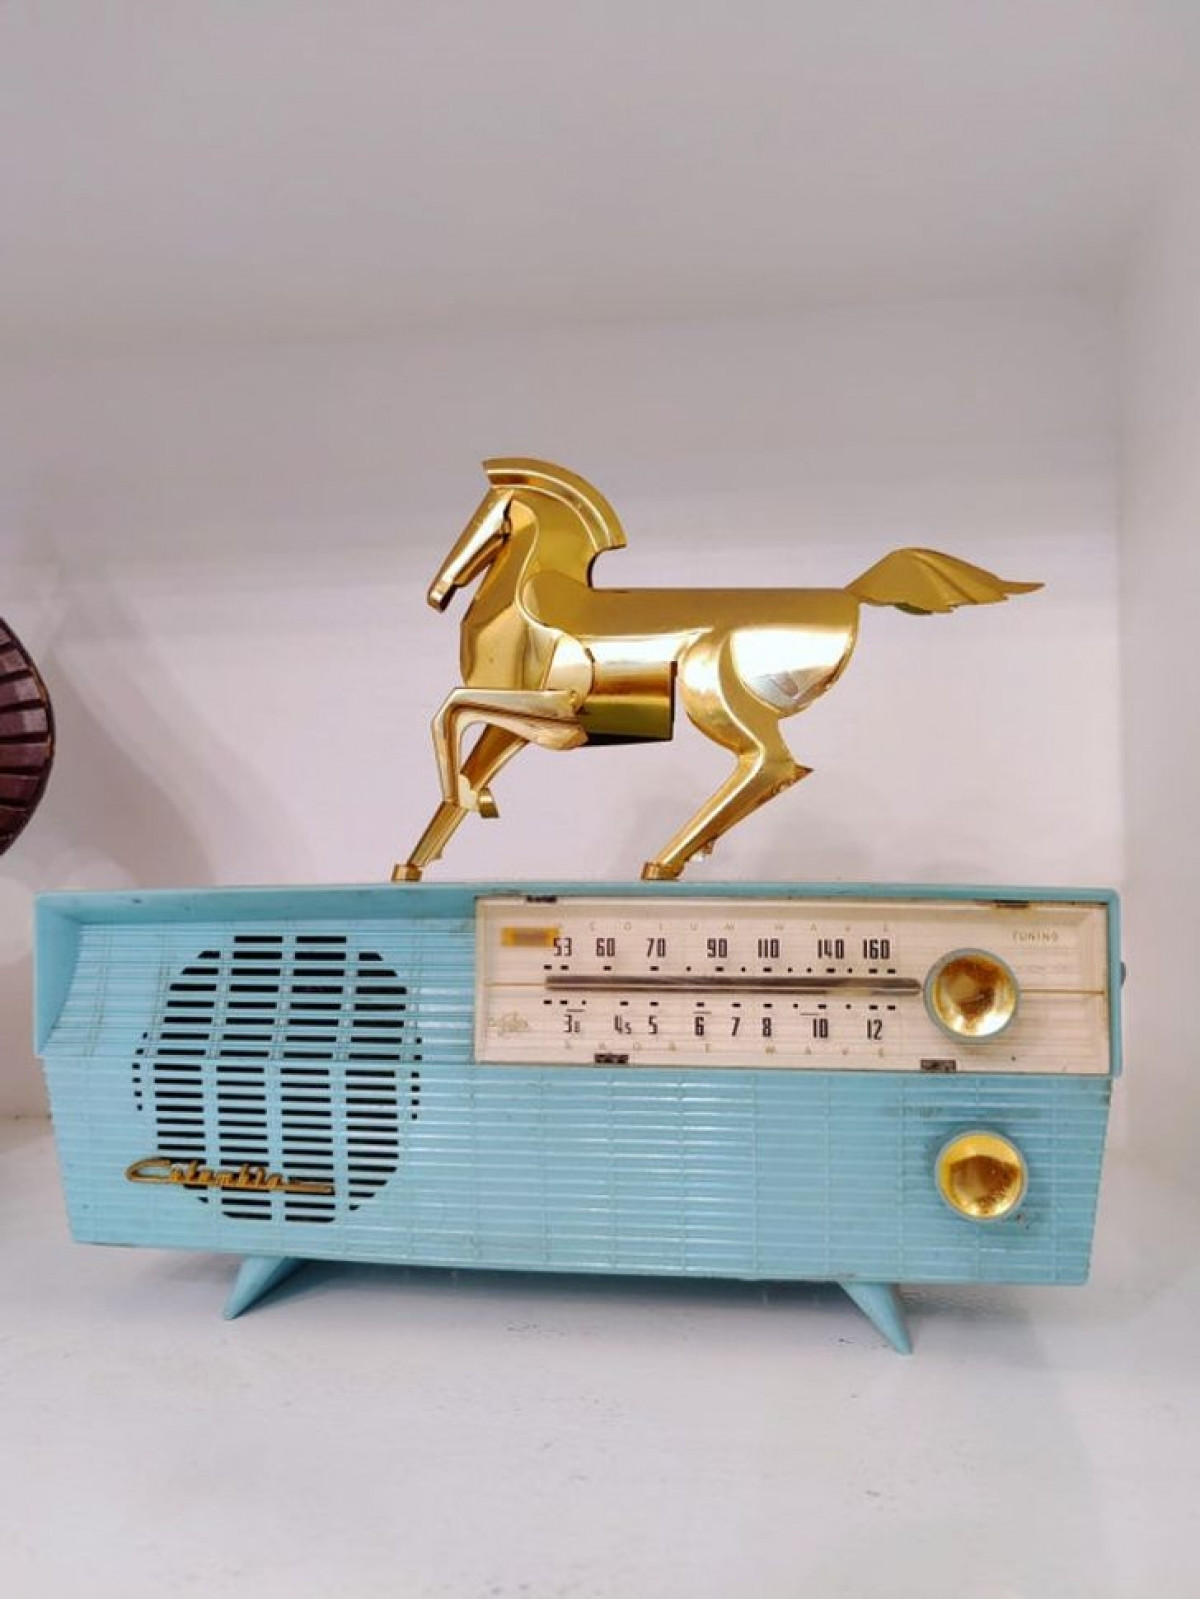 Chiếc radio cổ điển trở nên hoàn hảo khi được kết hợp với chú ngựa trang trí.